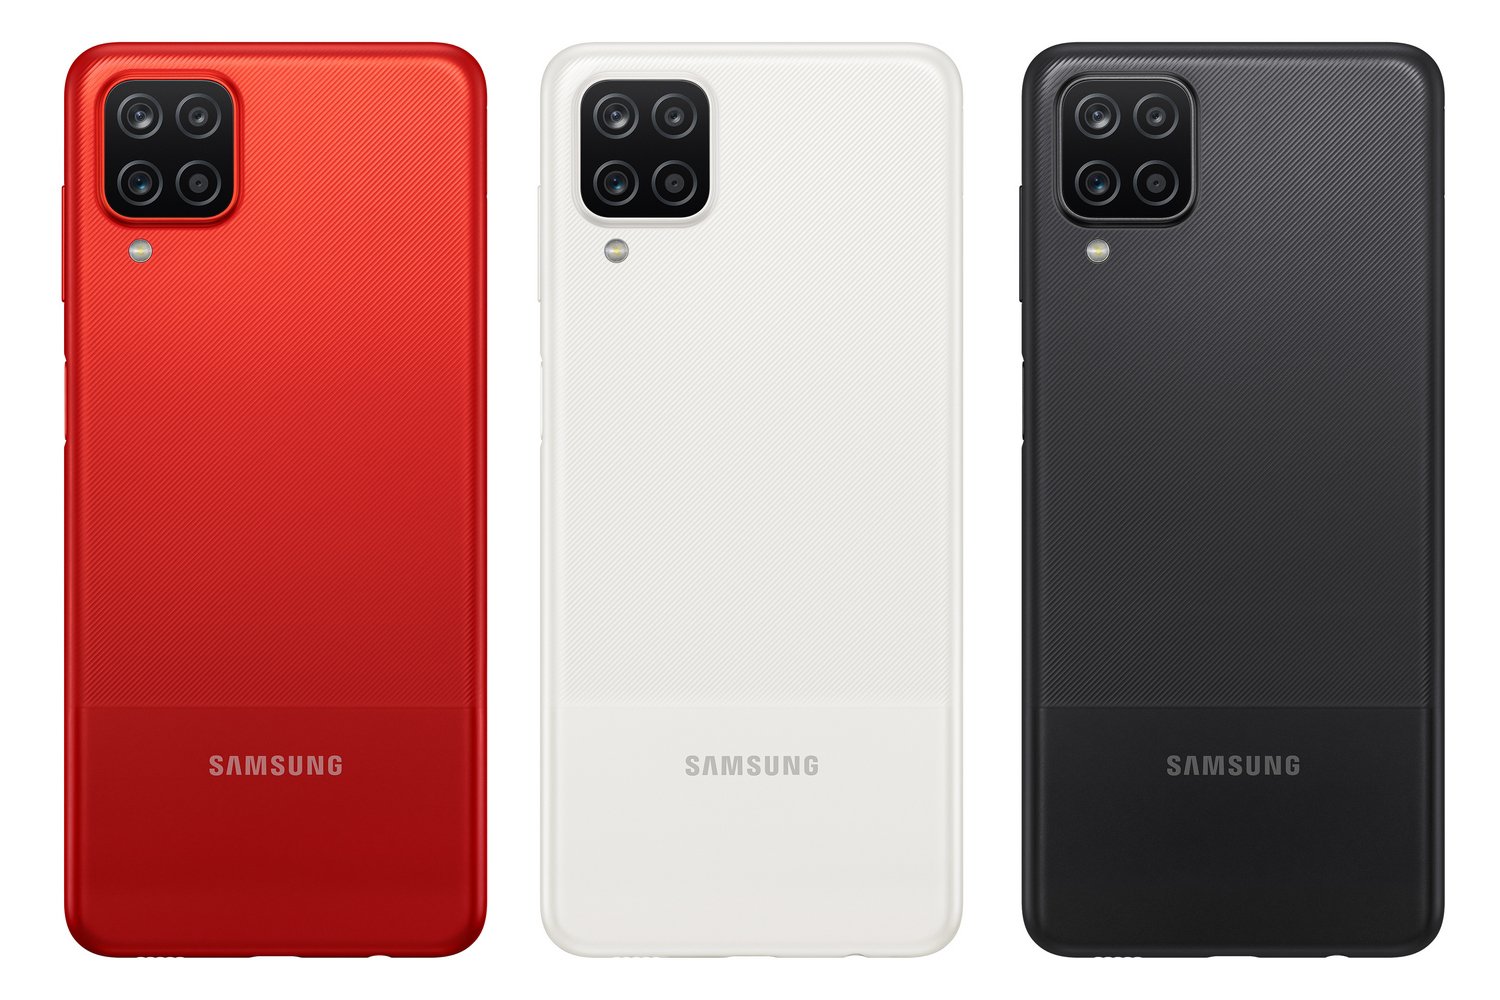 Samsung A12 Красный Отзывы